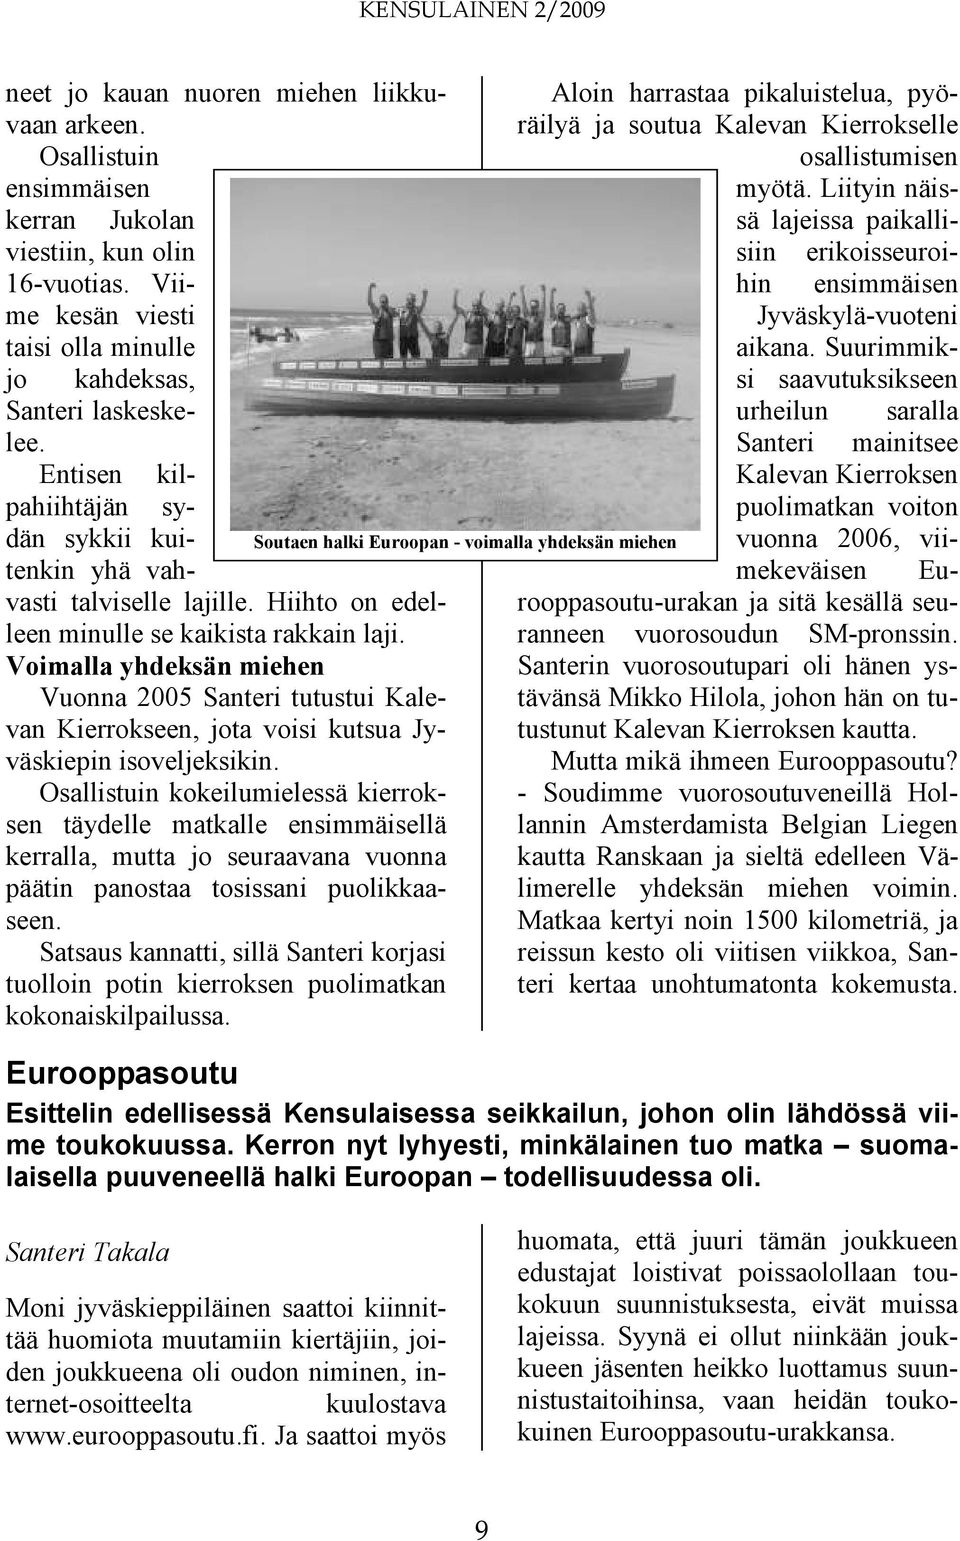 Voimalla yhdeksän miehen Vuonna 2005 Santeri tutustui Kalevan Kierrokseen, jota voisi kutsua Jyväskiepin isoveljeksikin.